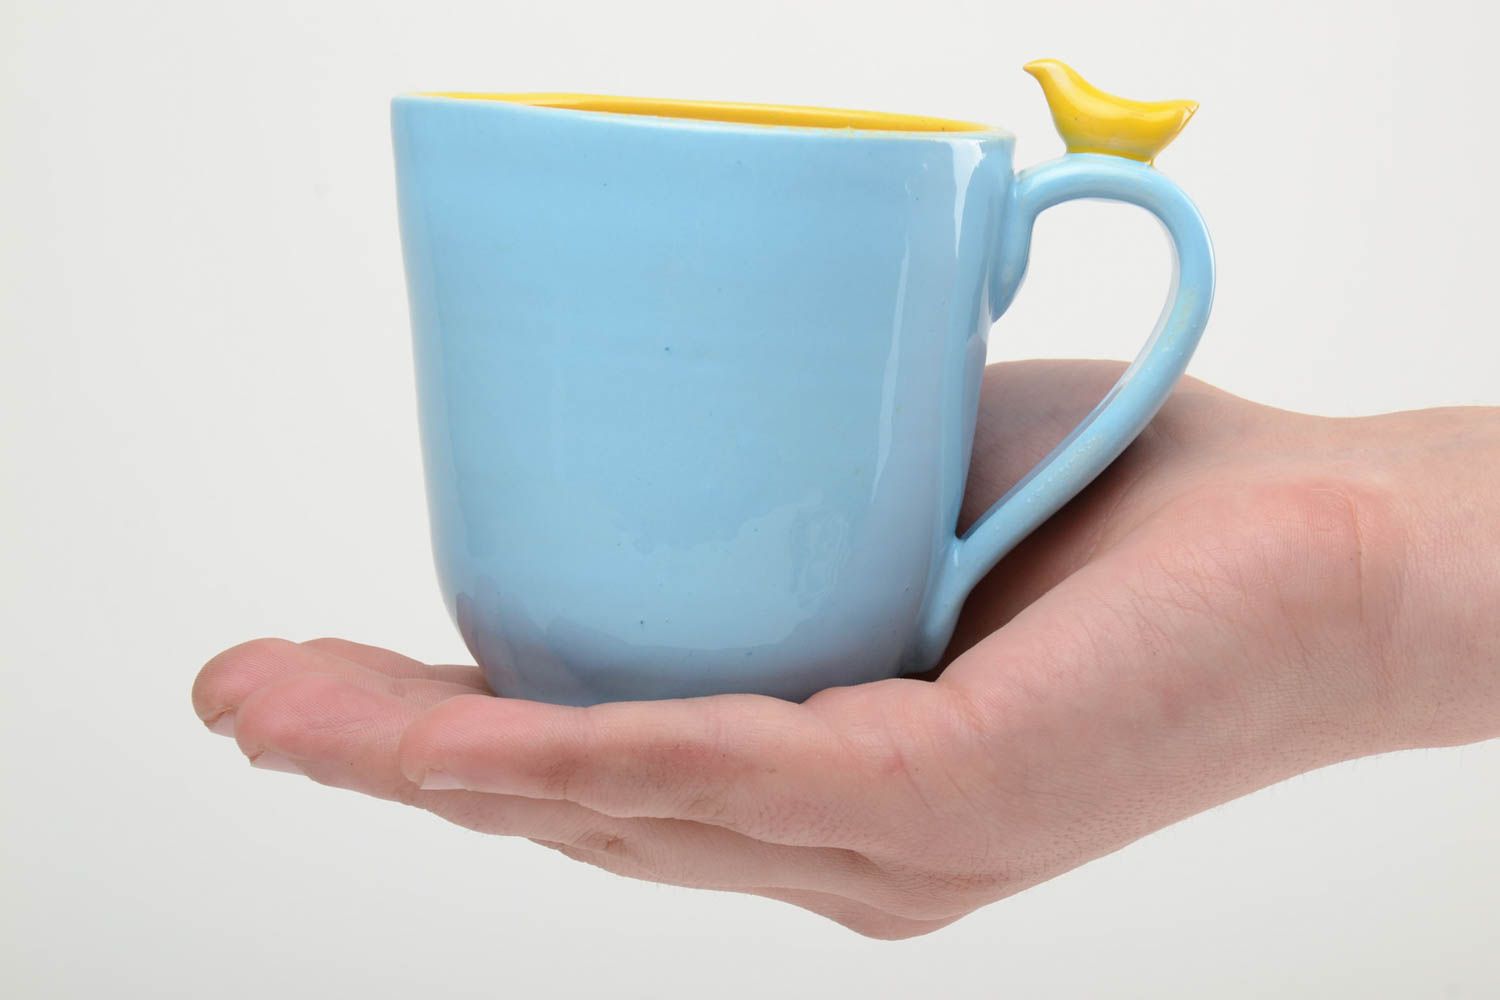 Глиняная чашка ручной работы расписанная глазурью и эмалью 400 мл желто-голубая фото 5